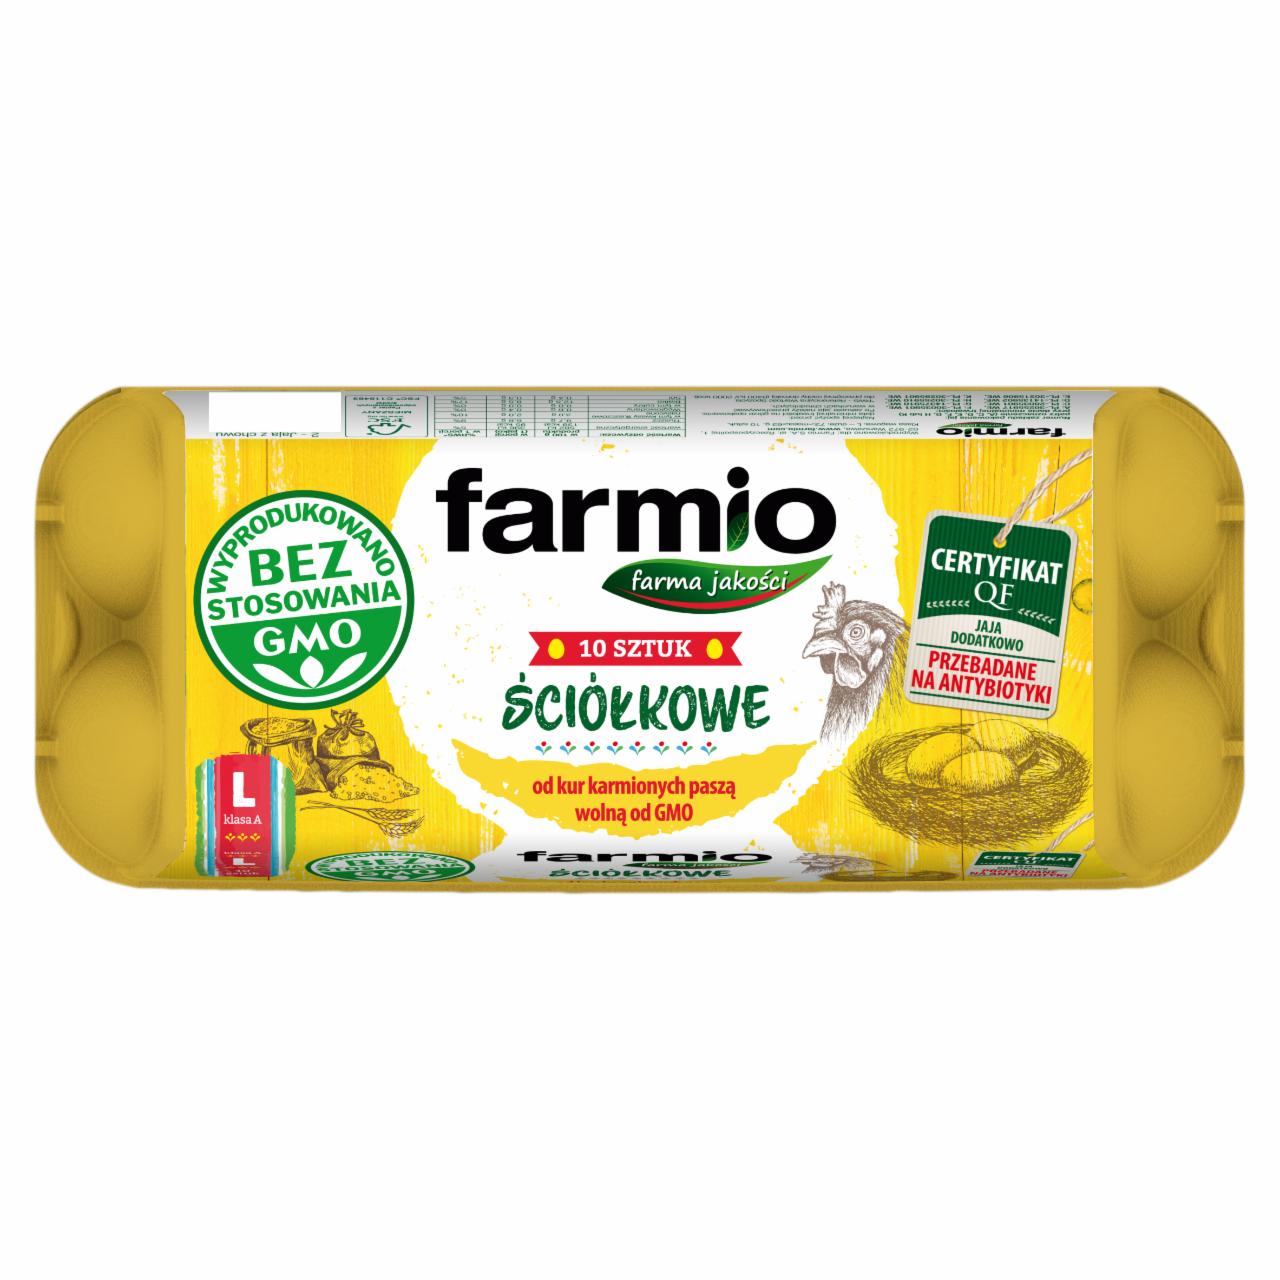 Zdjęcia - Farmio Jaja ściółkowe od kur karmionych paszą wolną od GMO L 10 sztuk